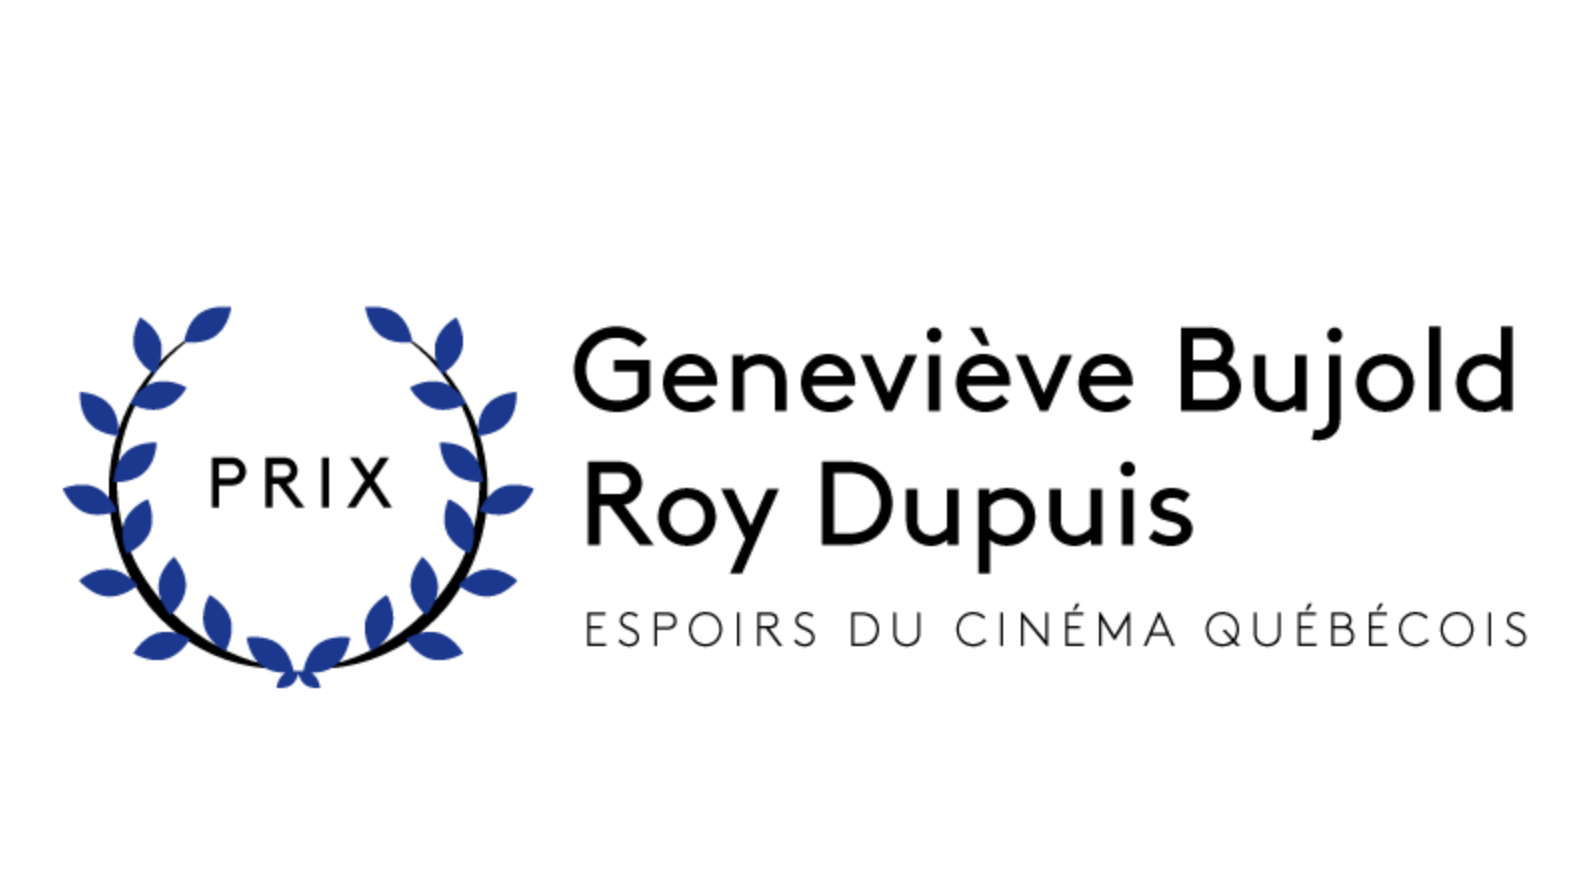 Prix- Espoirs du cinéma québécois, les votes ont commencés